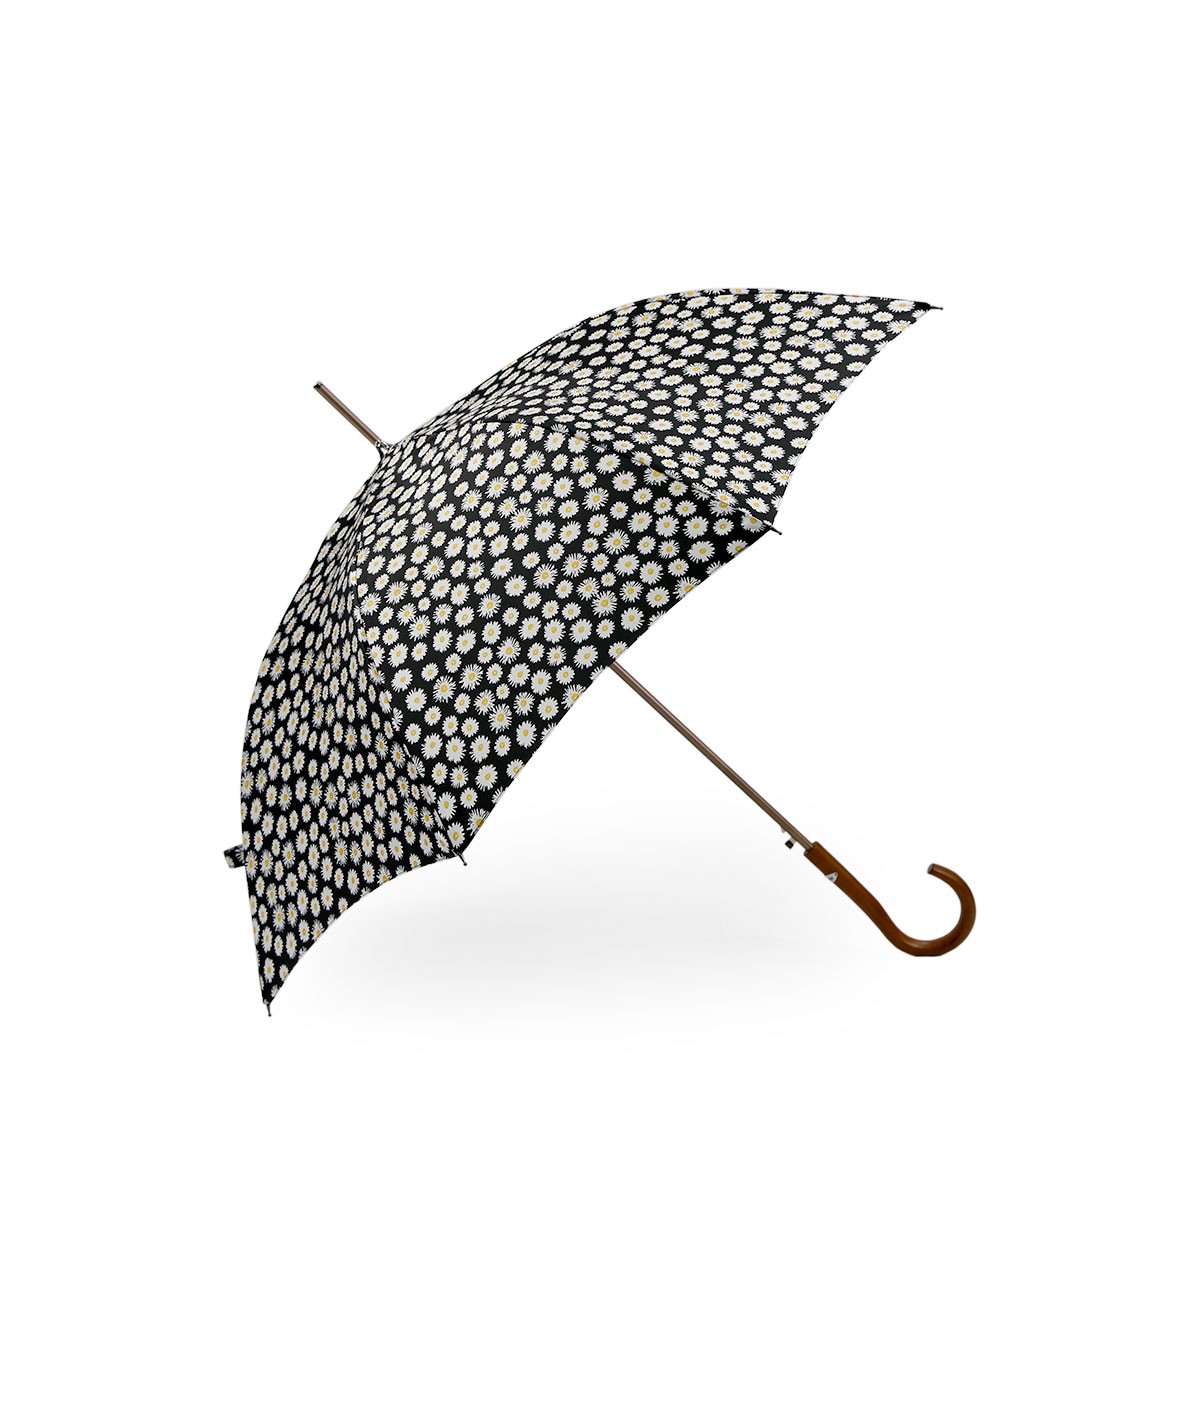 → Parapluie Satin Imprimé Fantaisie - Long Automatic N°1 - Made in France par Maison Pierre Vaux Fabricant Français de Parapluie